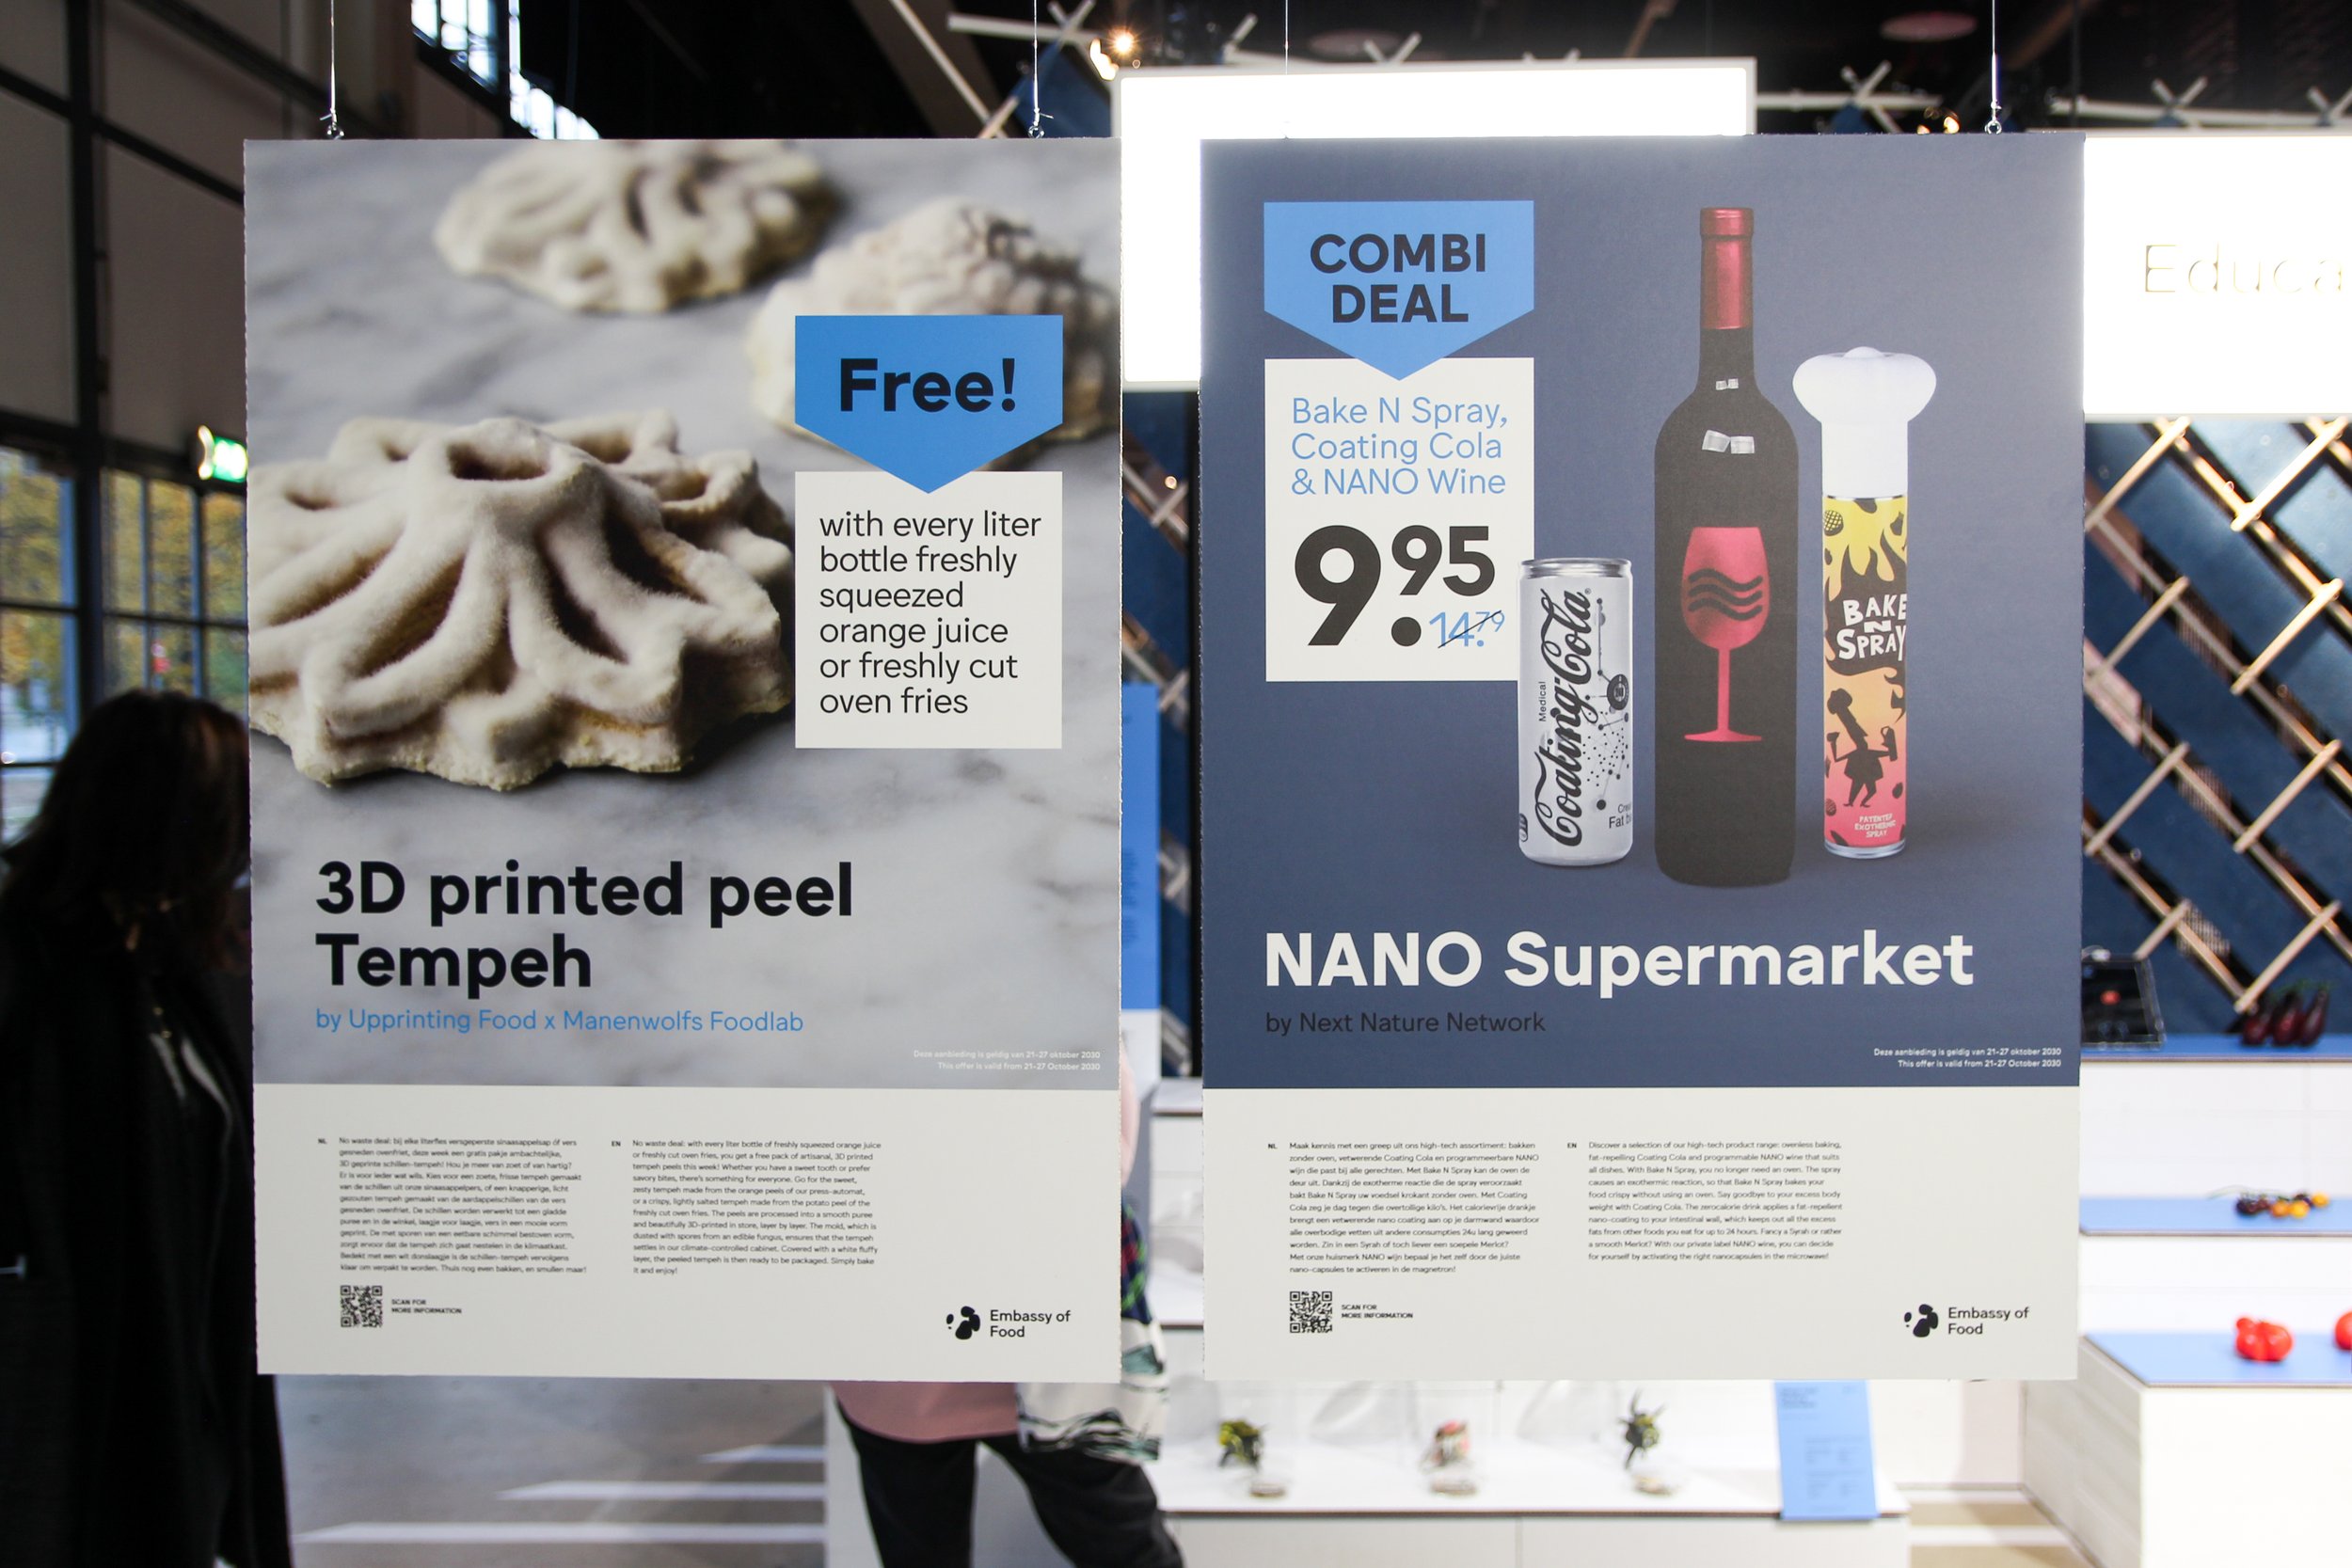 3D printed Tempeh &amp; Nano Supermarket